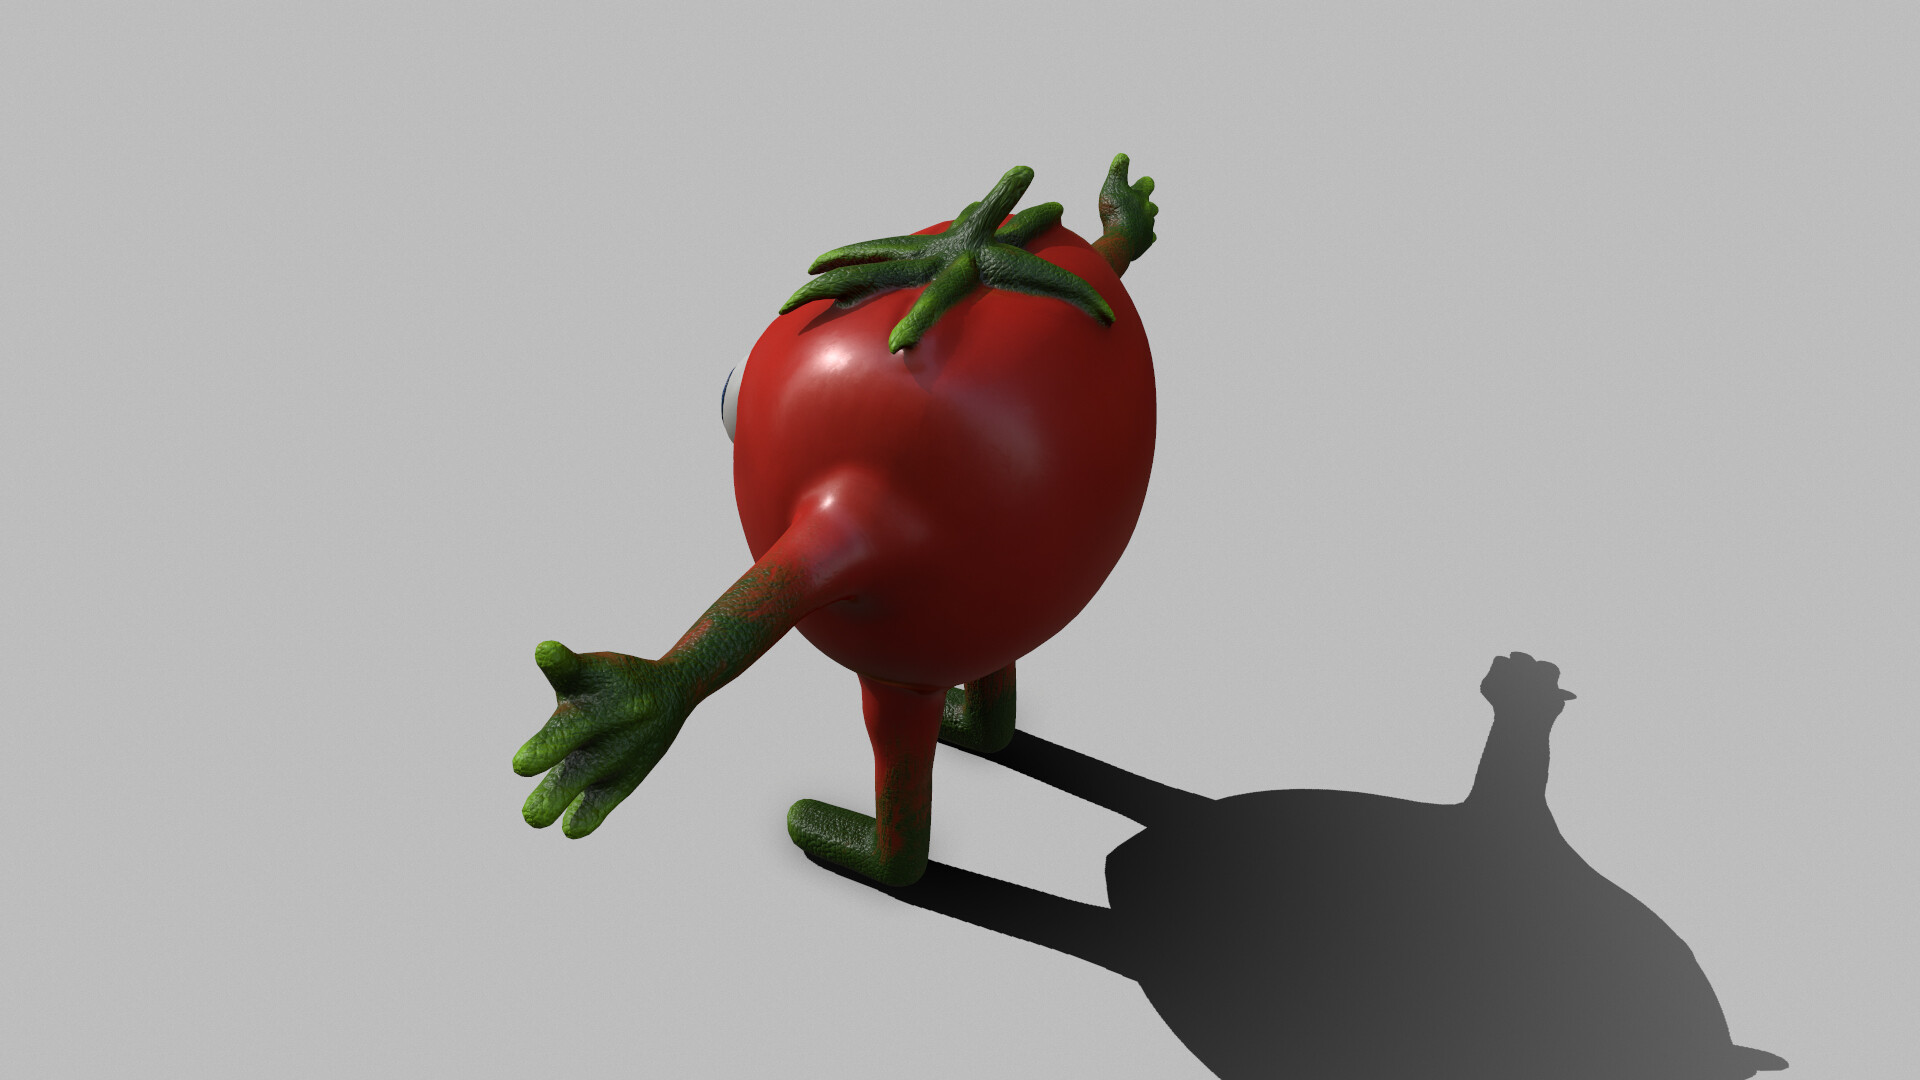 ArtStation - Baby Tomato